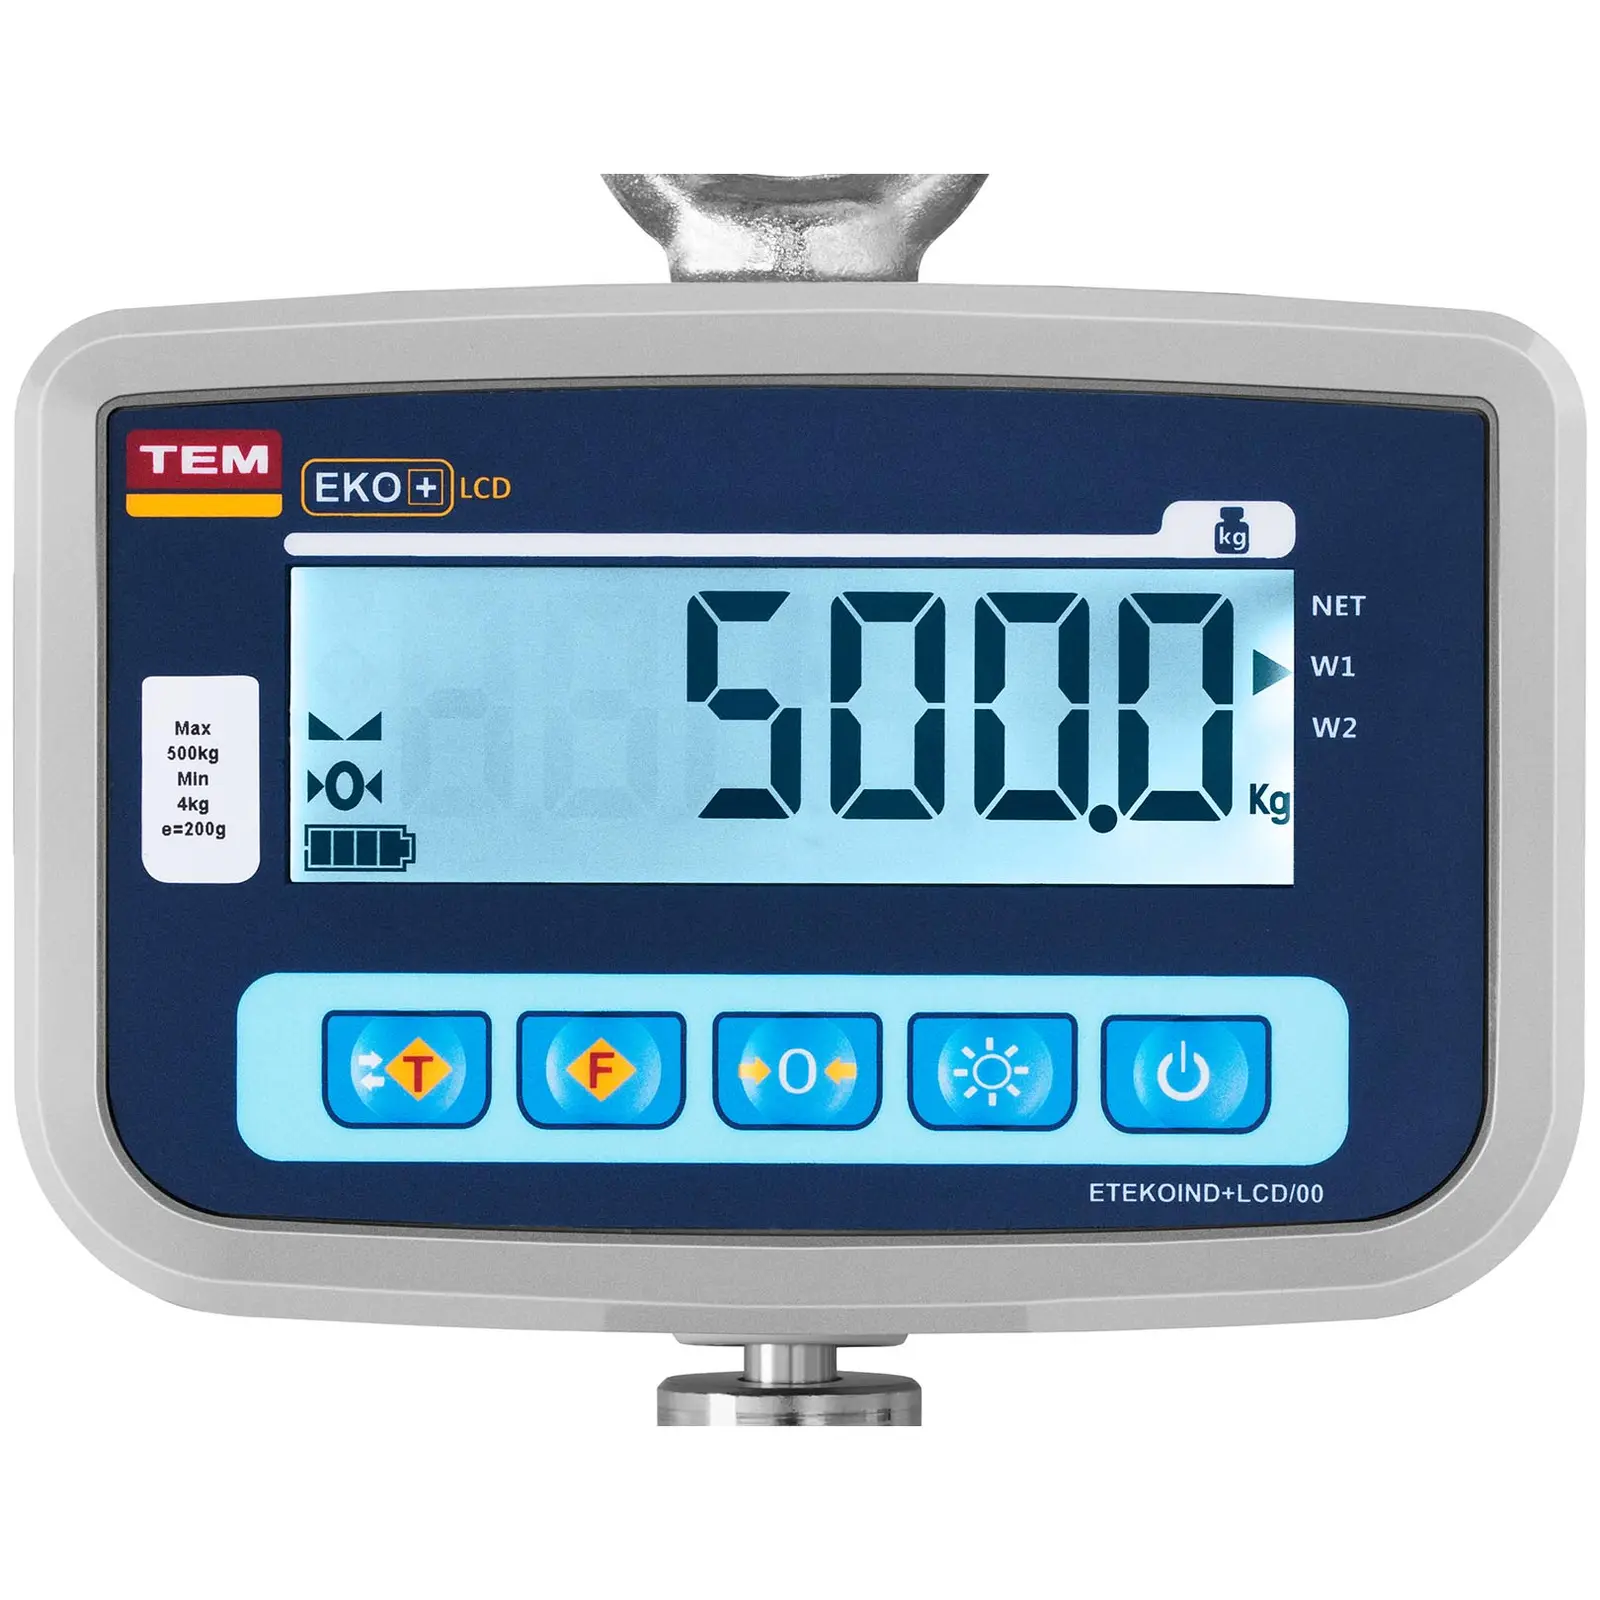 Crane scale - 500 kg / 0.5 kg - calibratable